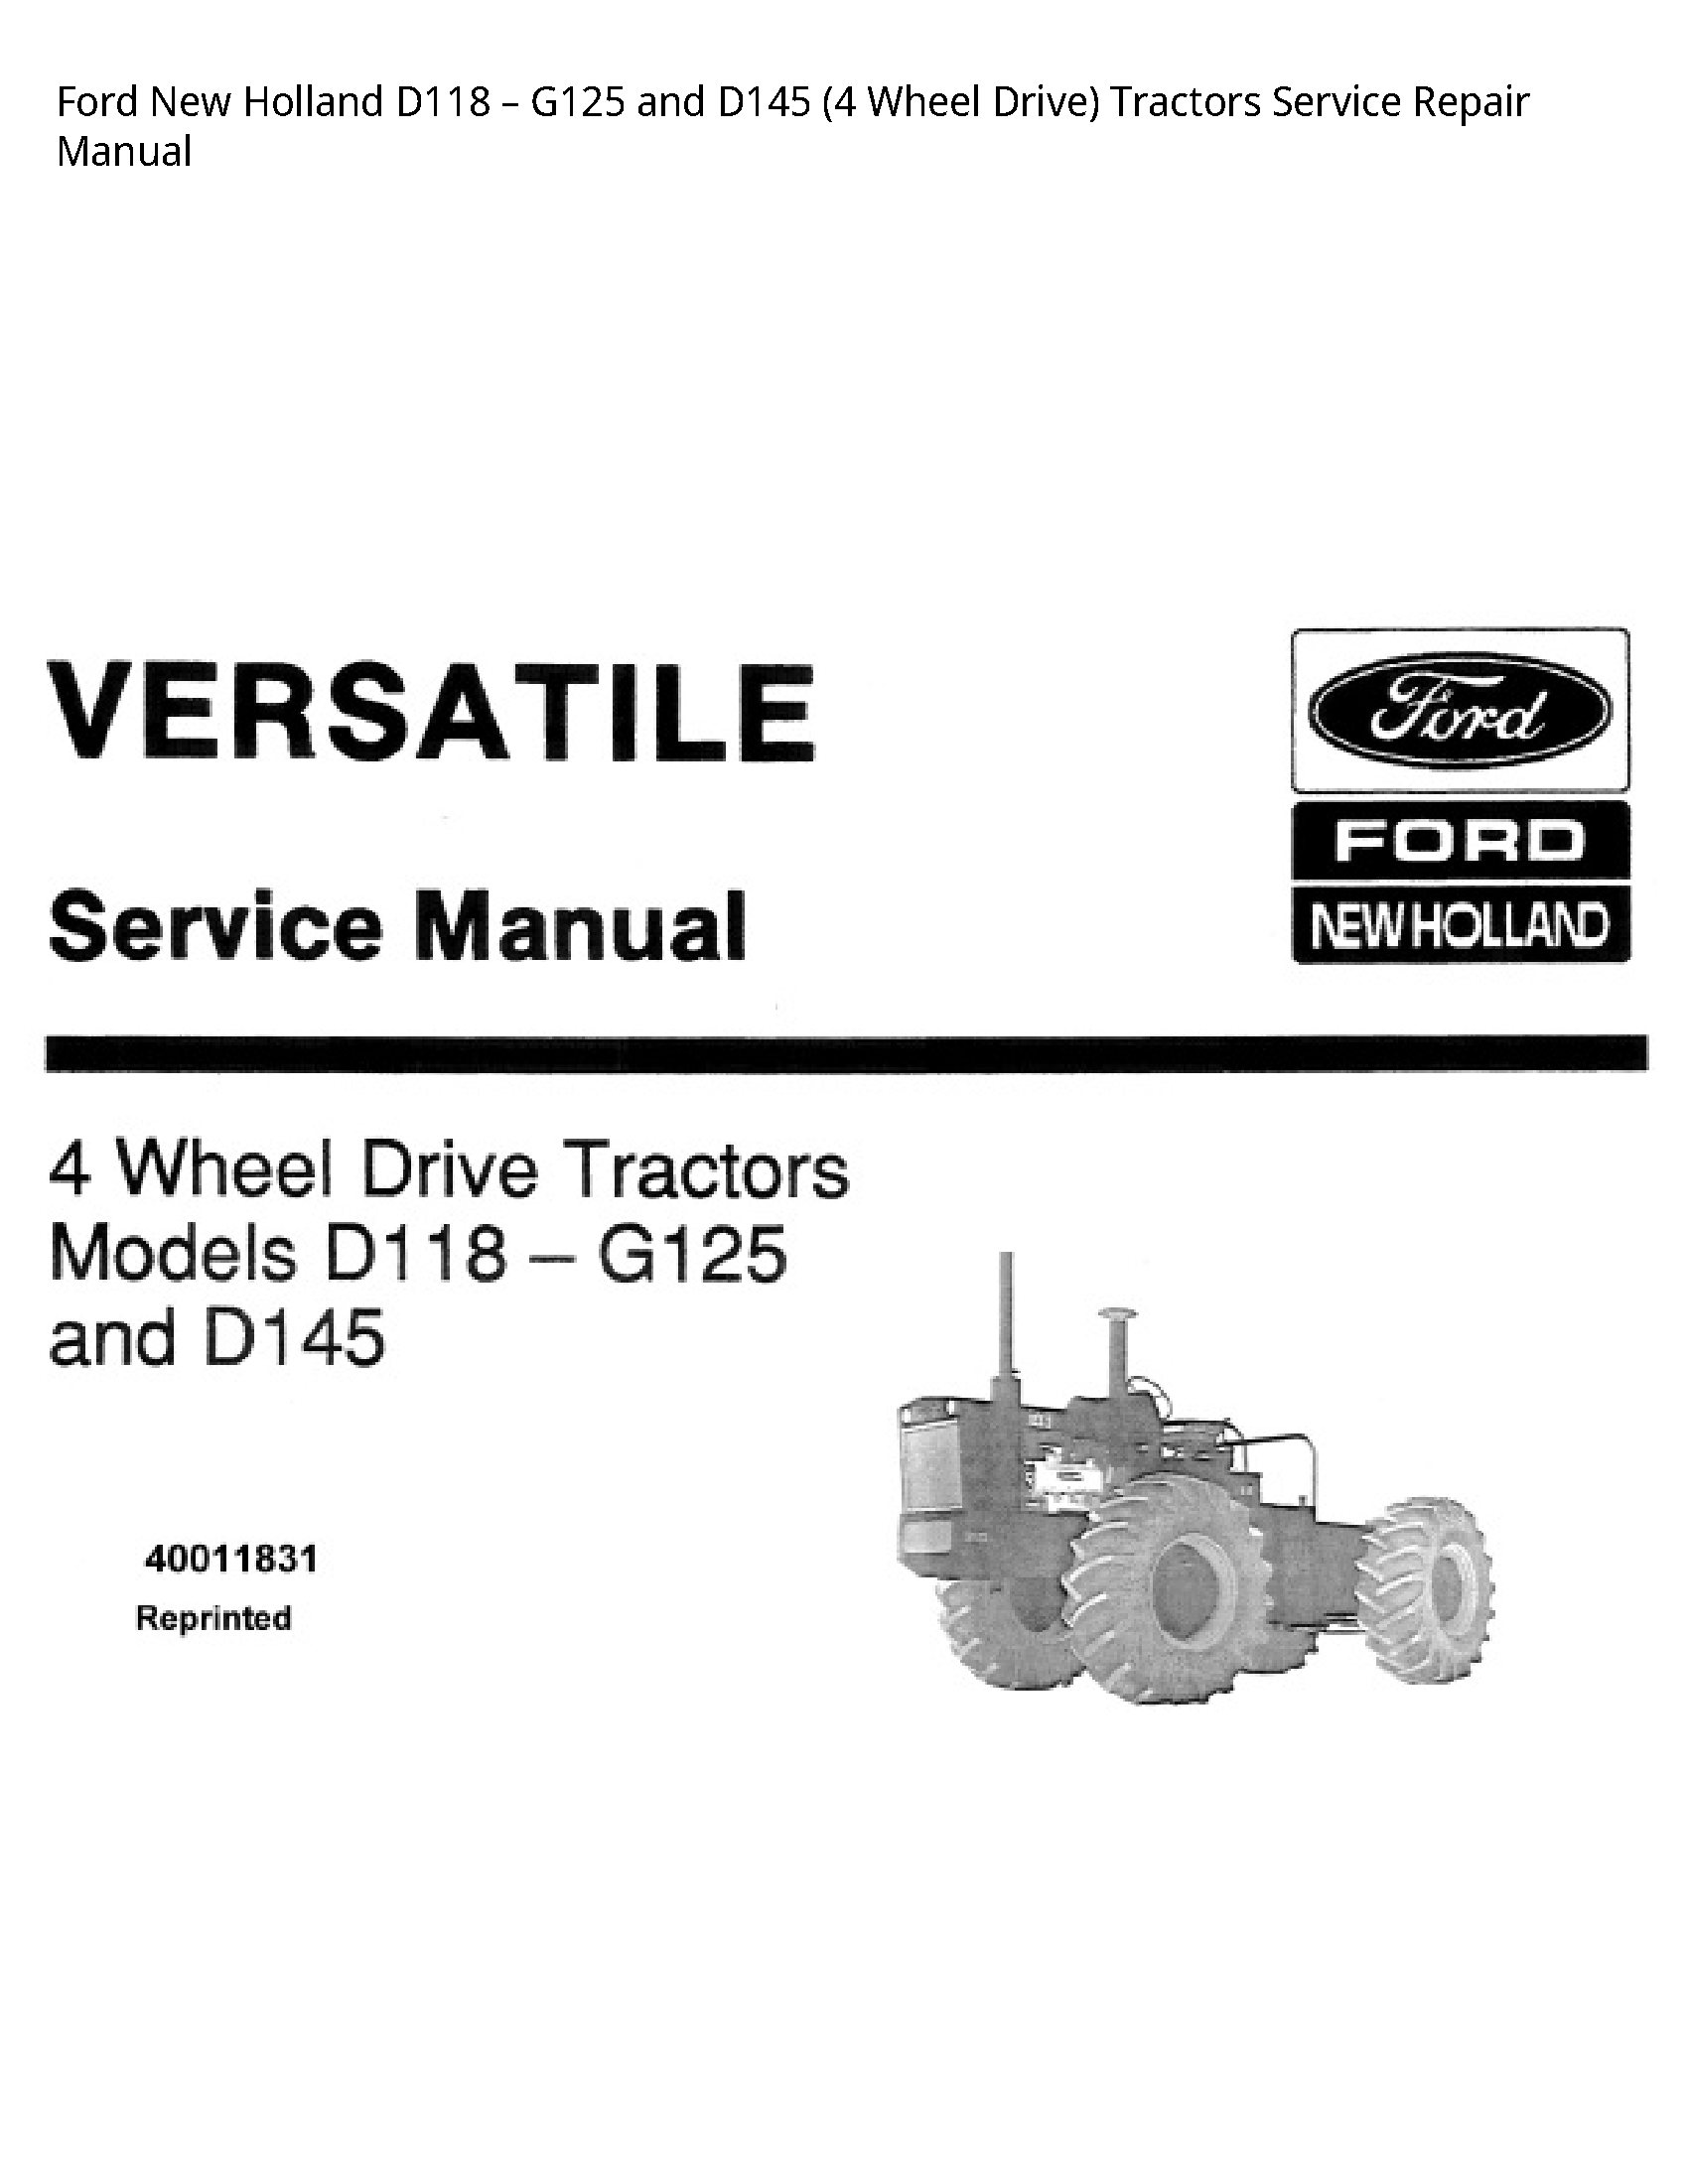  D118  Wheel Drive) Tractors manual